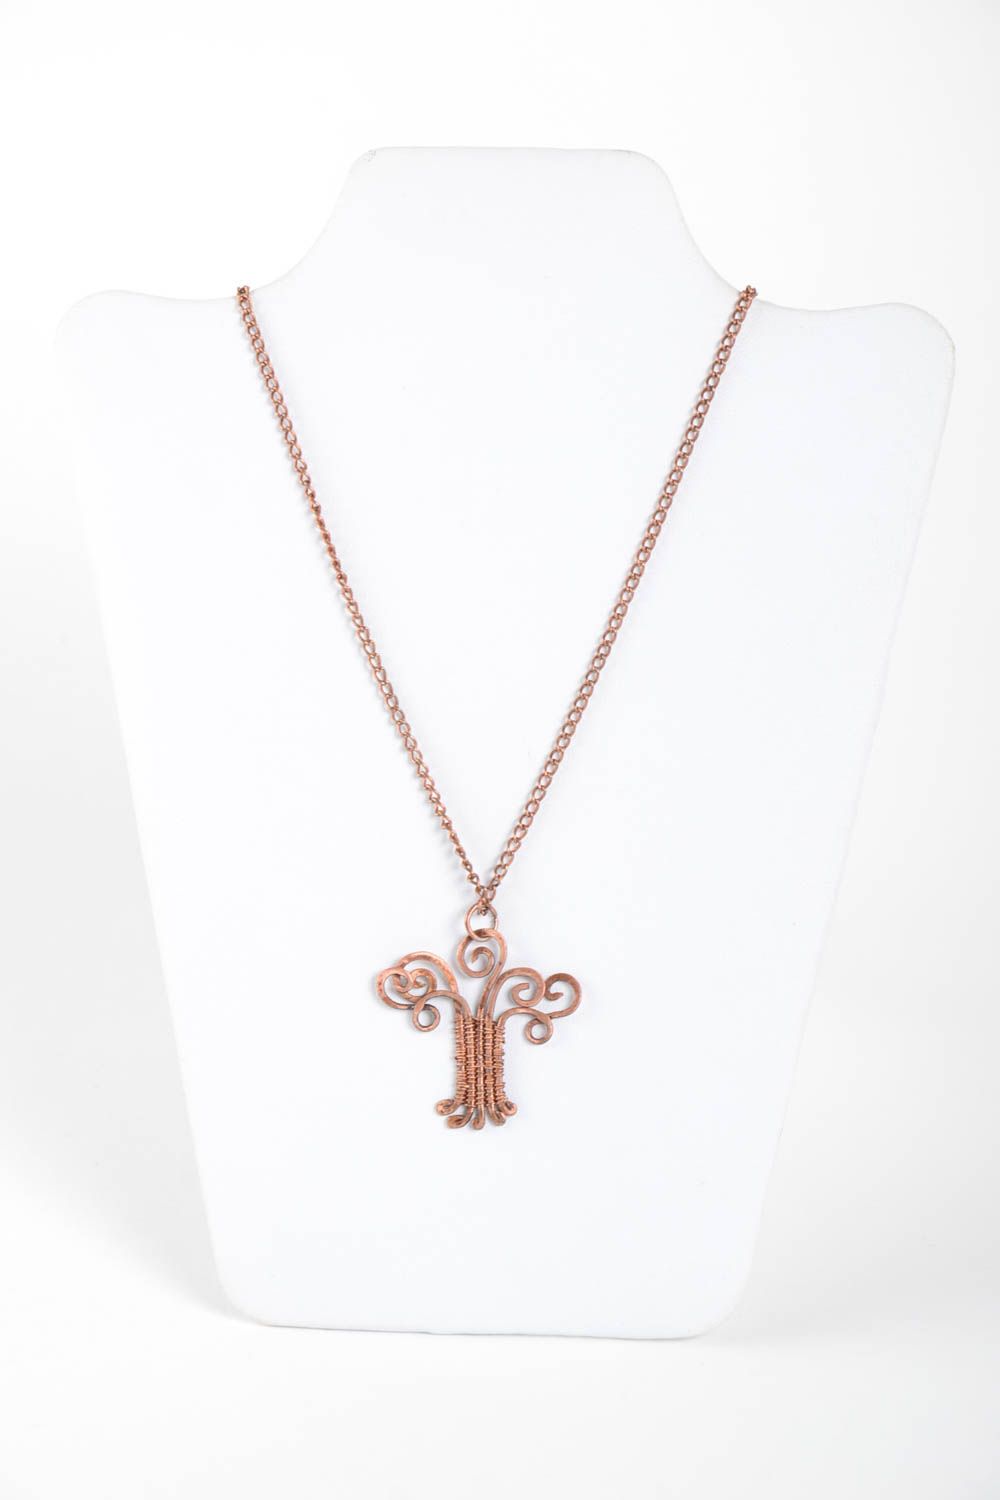 Handmade copper pendant copper accessories fashion jewelry metal pendant photo 2